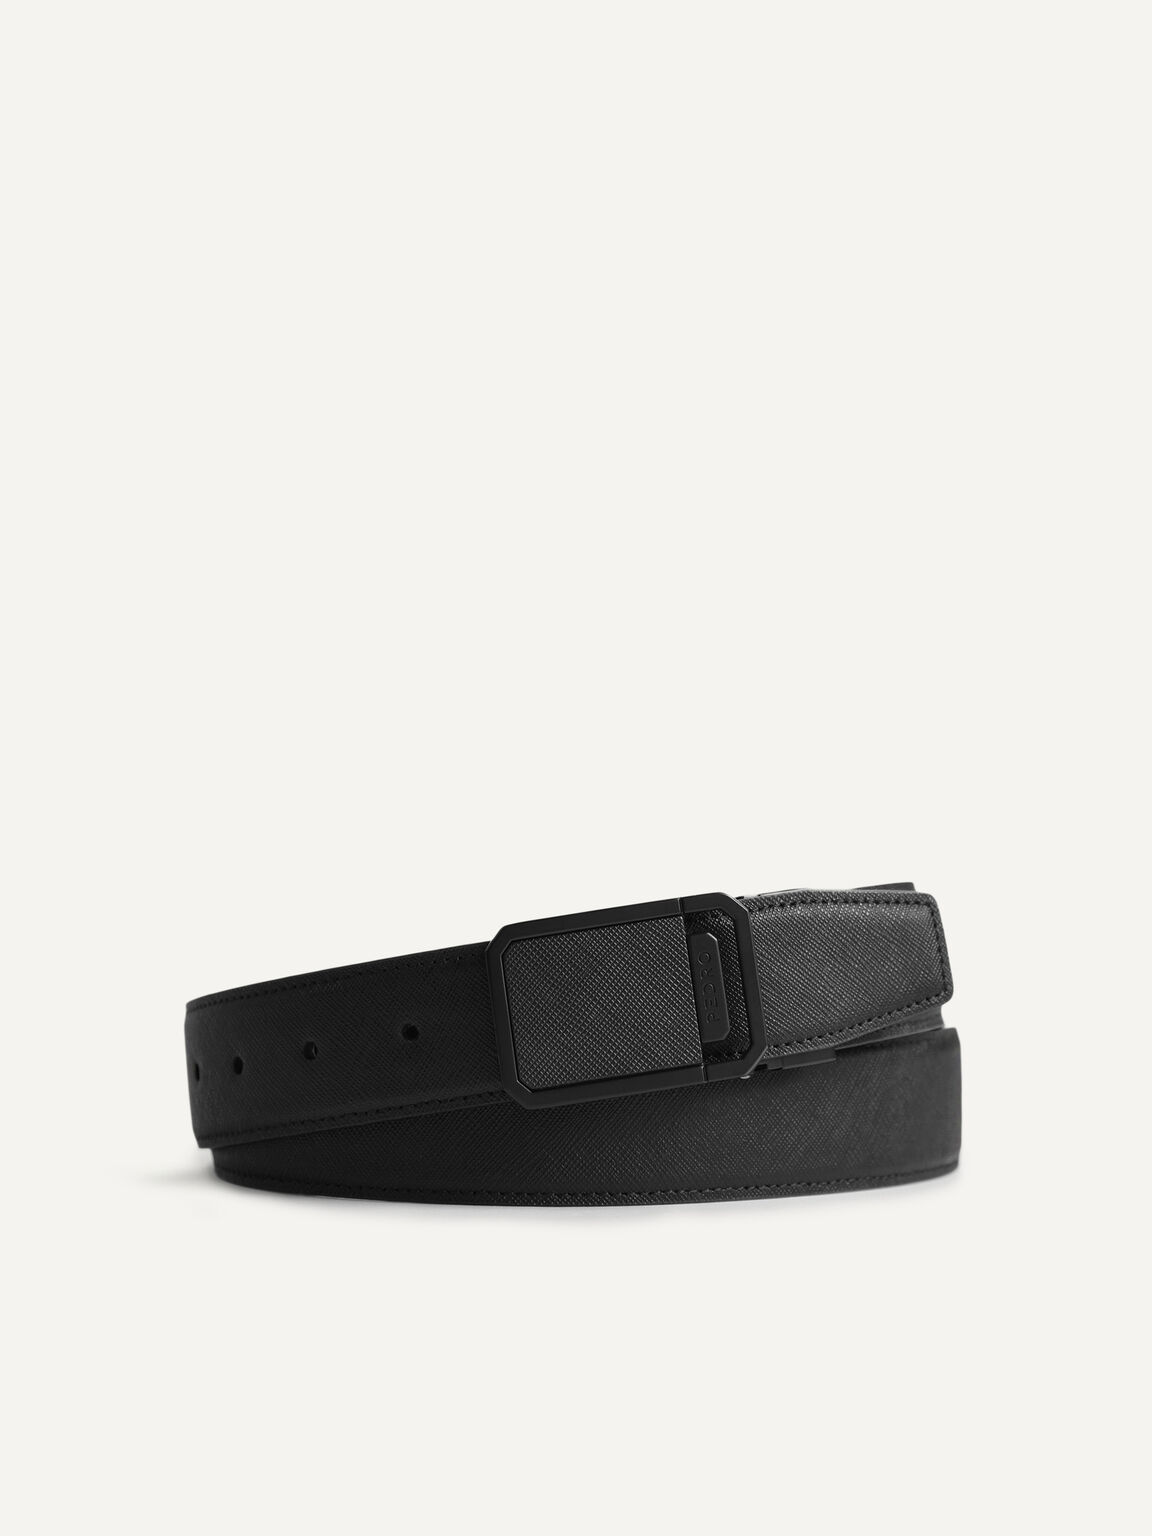 Reversible Textured Leather Belt, Black, hi-res